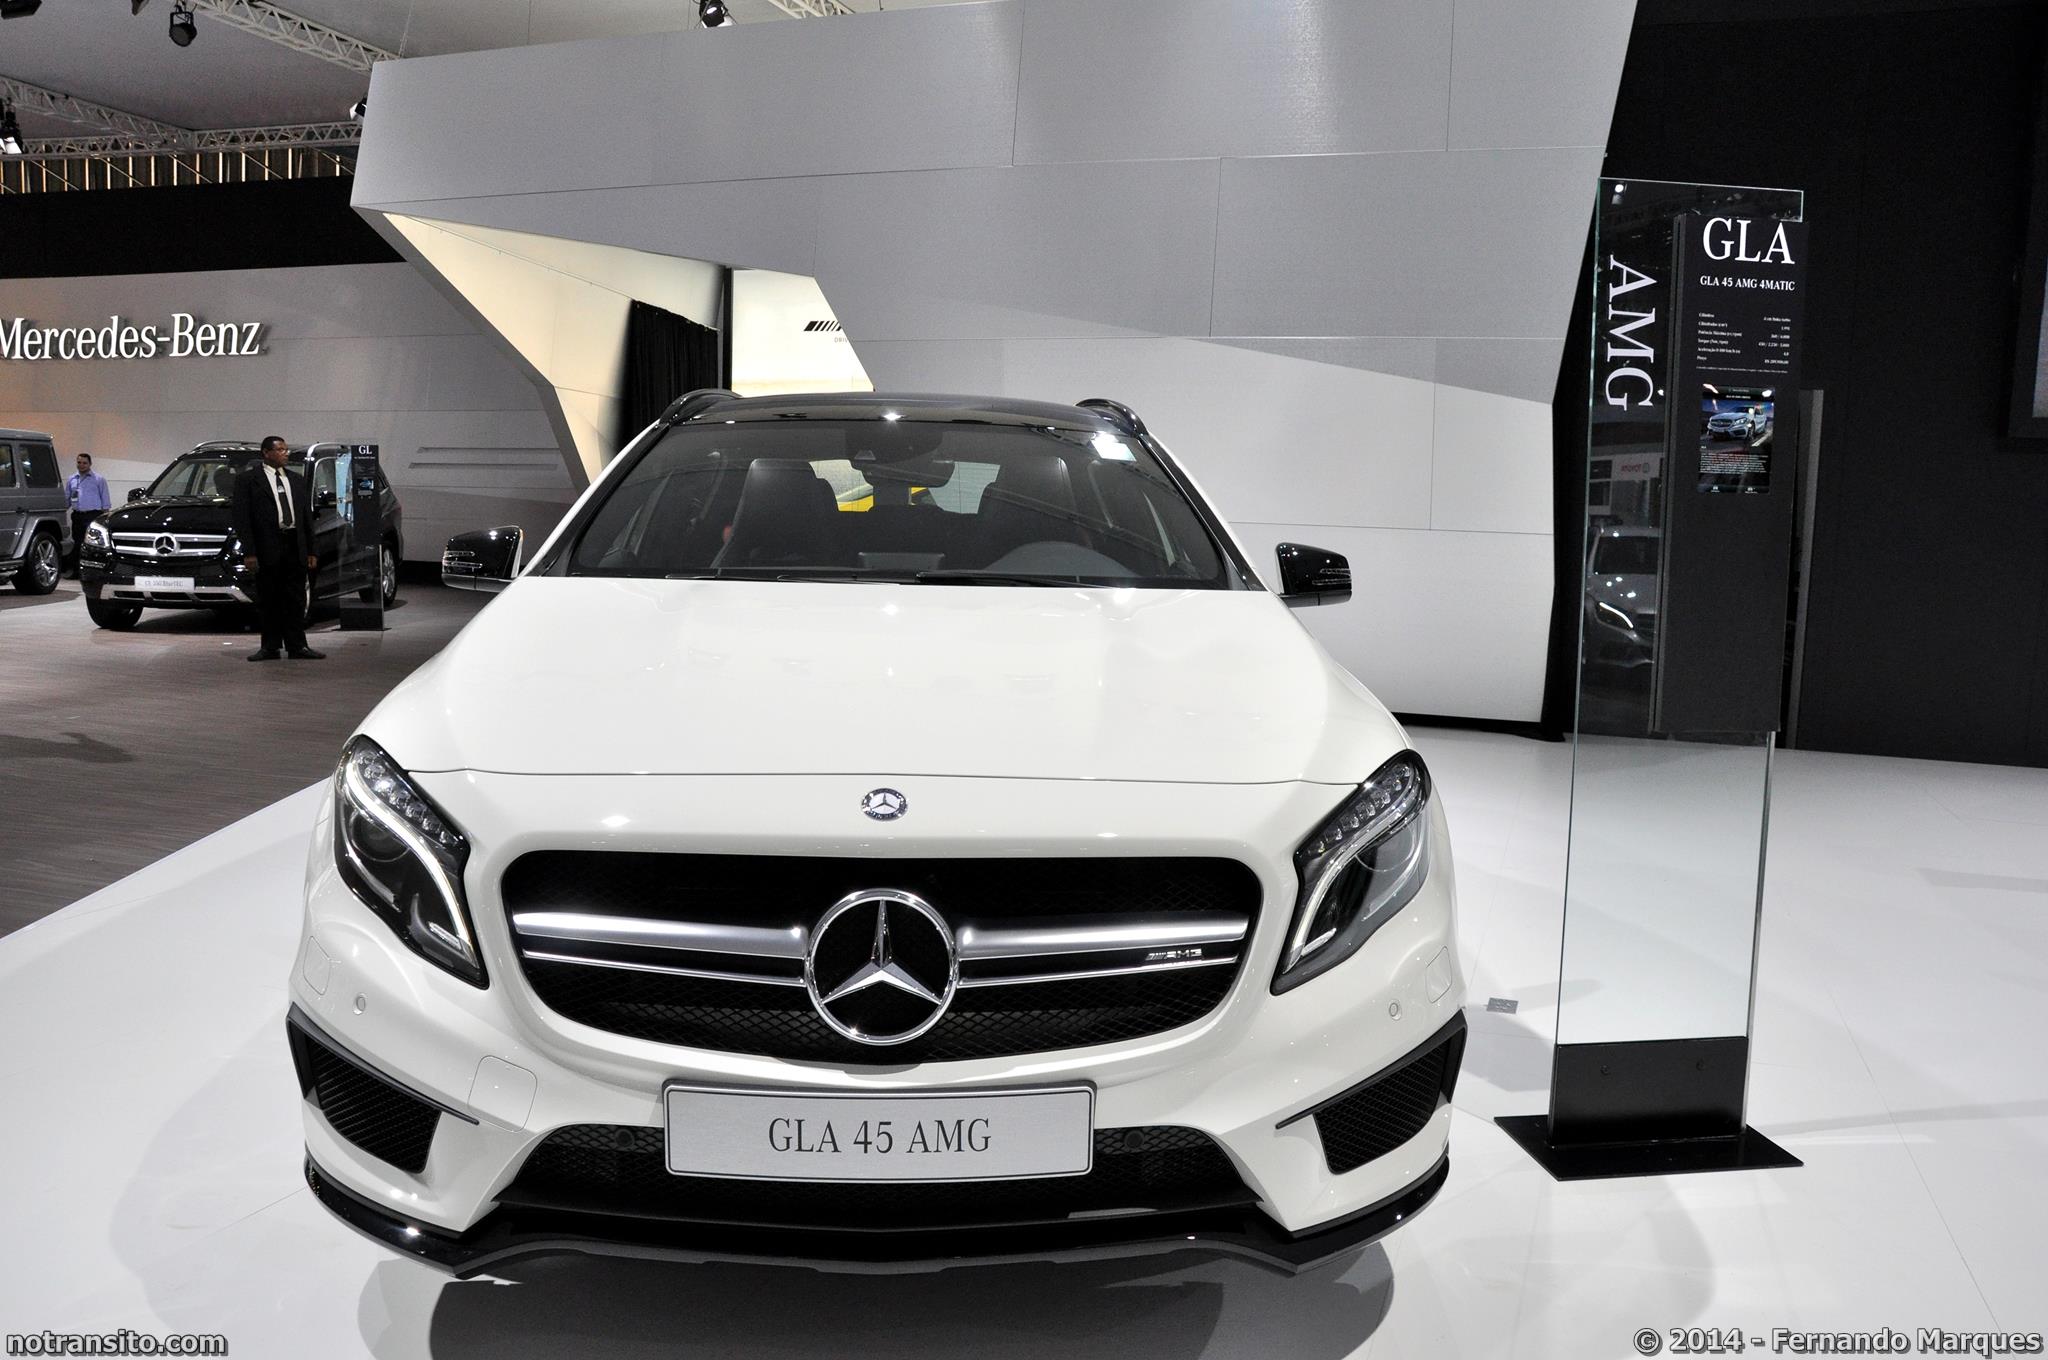 Salão do Automóvel de São Paulo 2014, 28º Salão do Automóvel de São Paulo, Mercedes-Benz GLA 45 AMG Cirrus White, Cirrus White